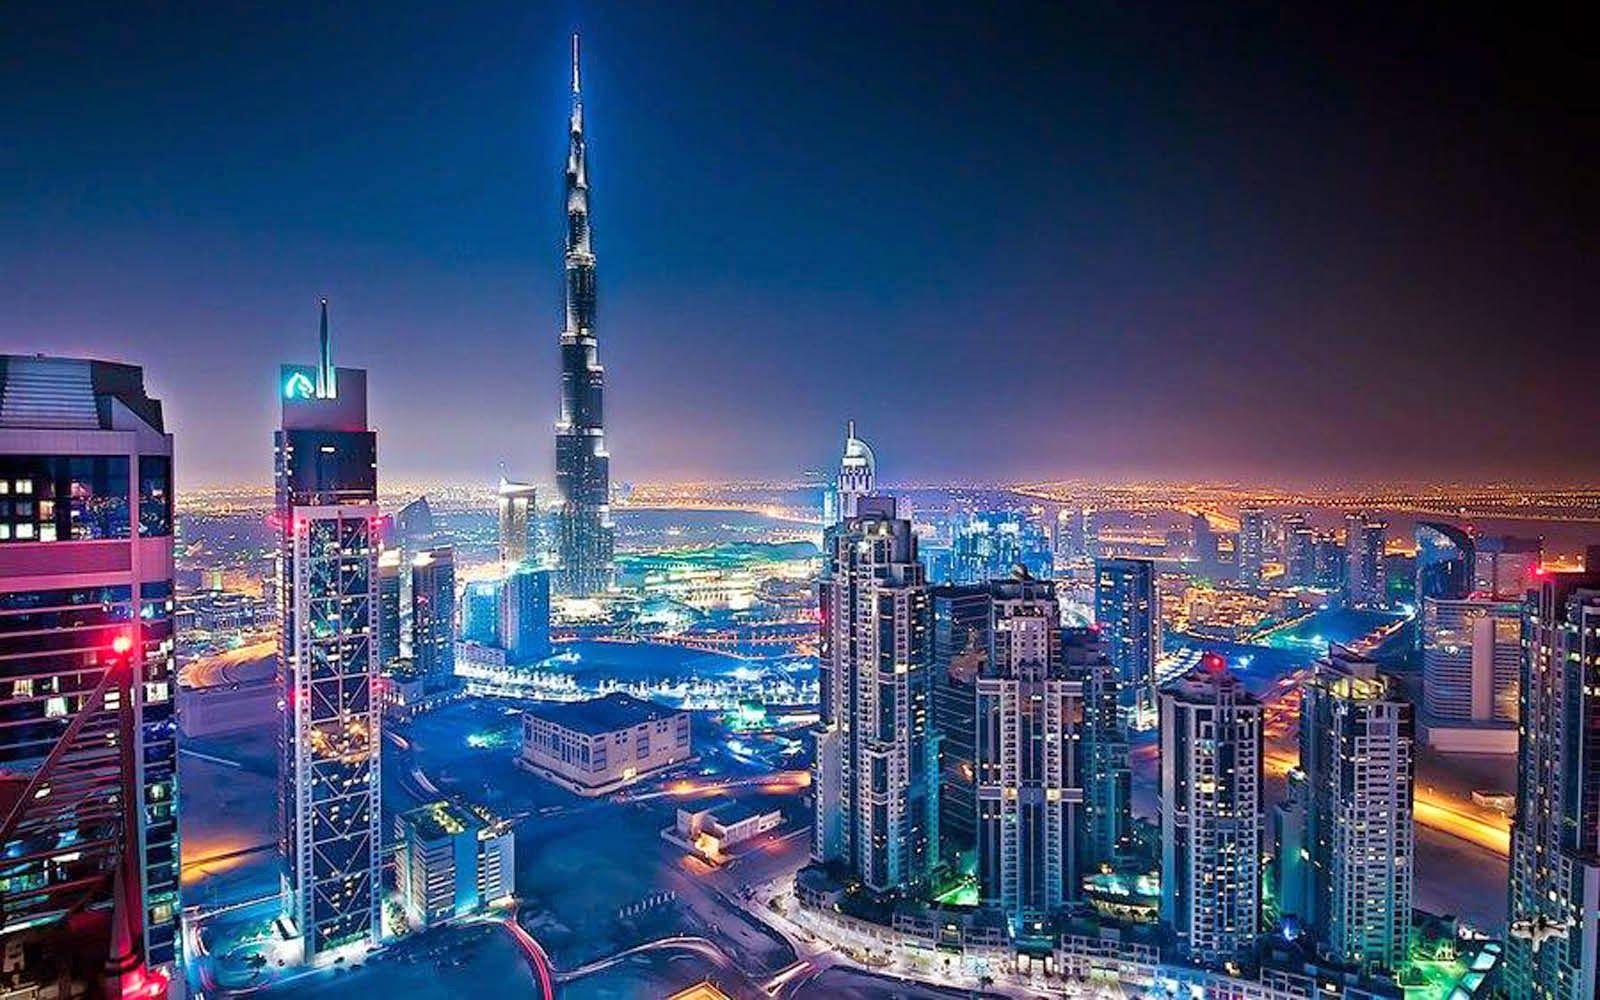 Burj Khalifa Wallpaper At Night - HD Wallpaper 